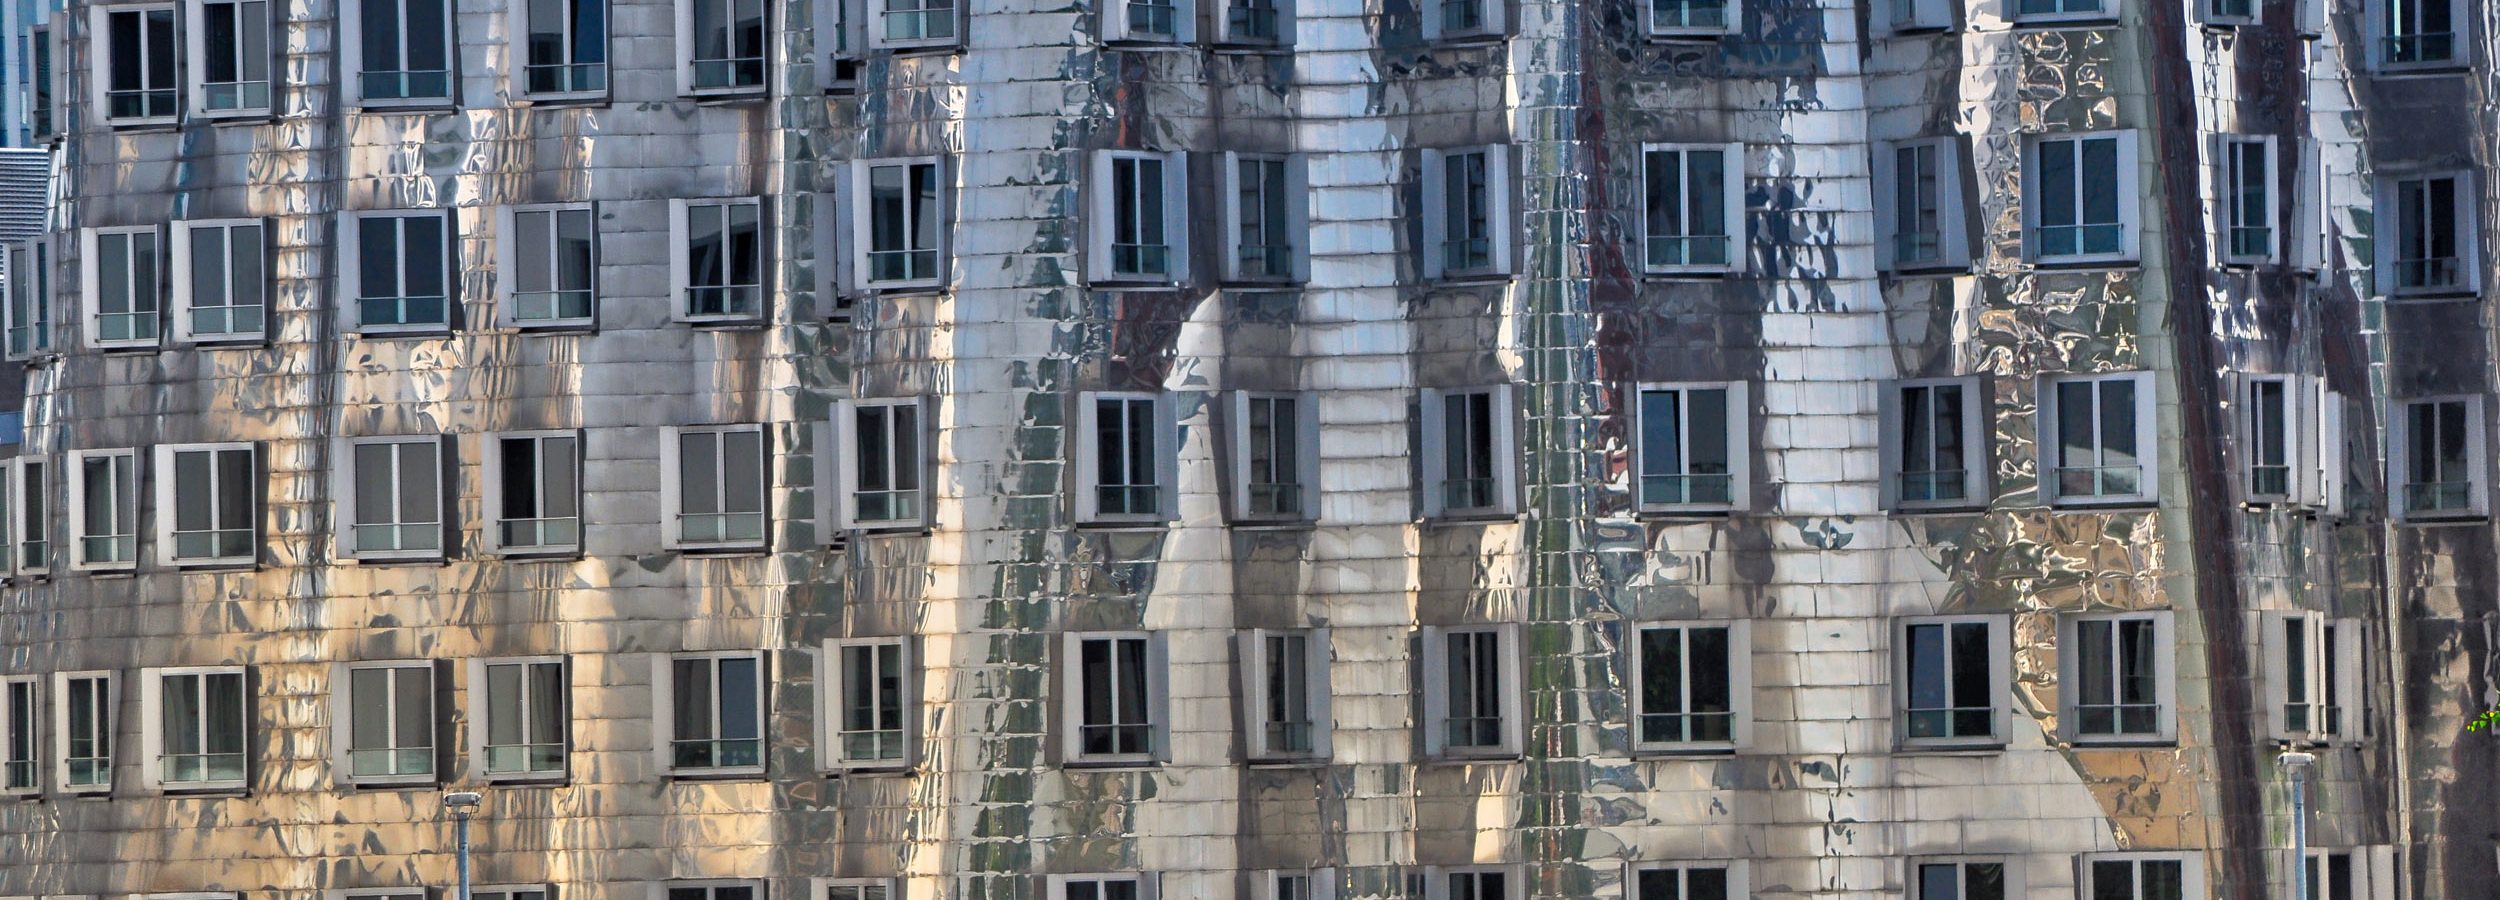 Neuer Zollhof - budynki Franka Gehry'ego w Düsseldorfie